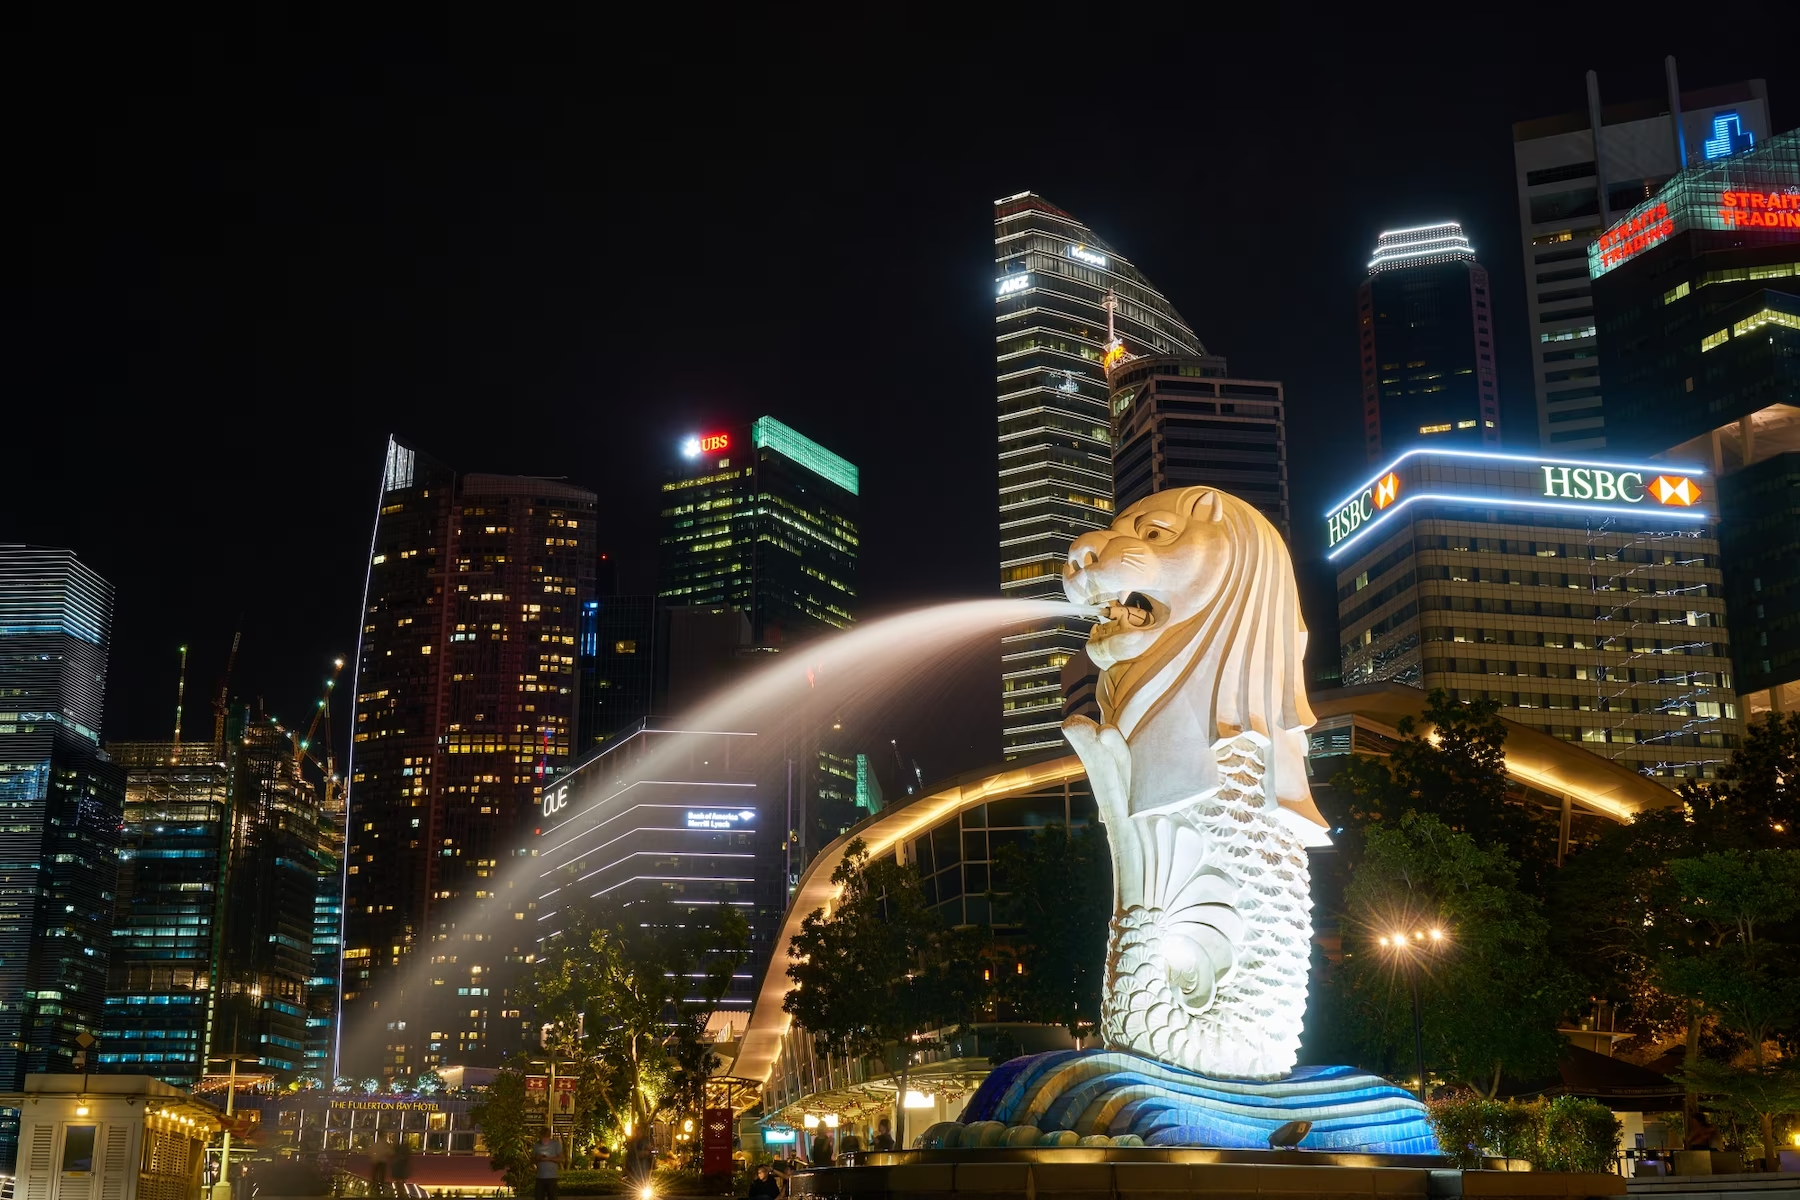 位處於新加坡，近期剛開幕的碳交易所 Climate Impact X（CIX）最近頗受矚目